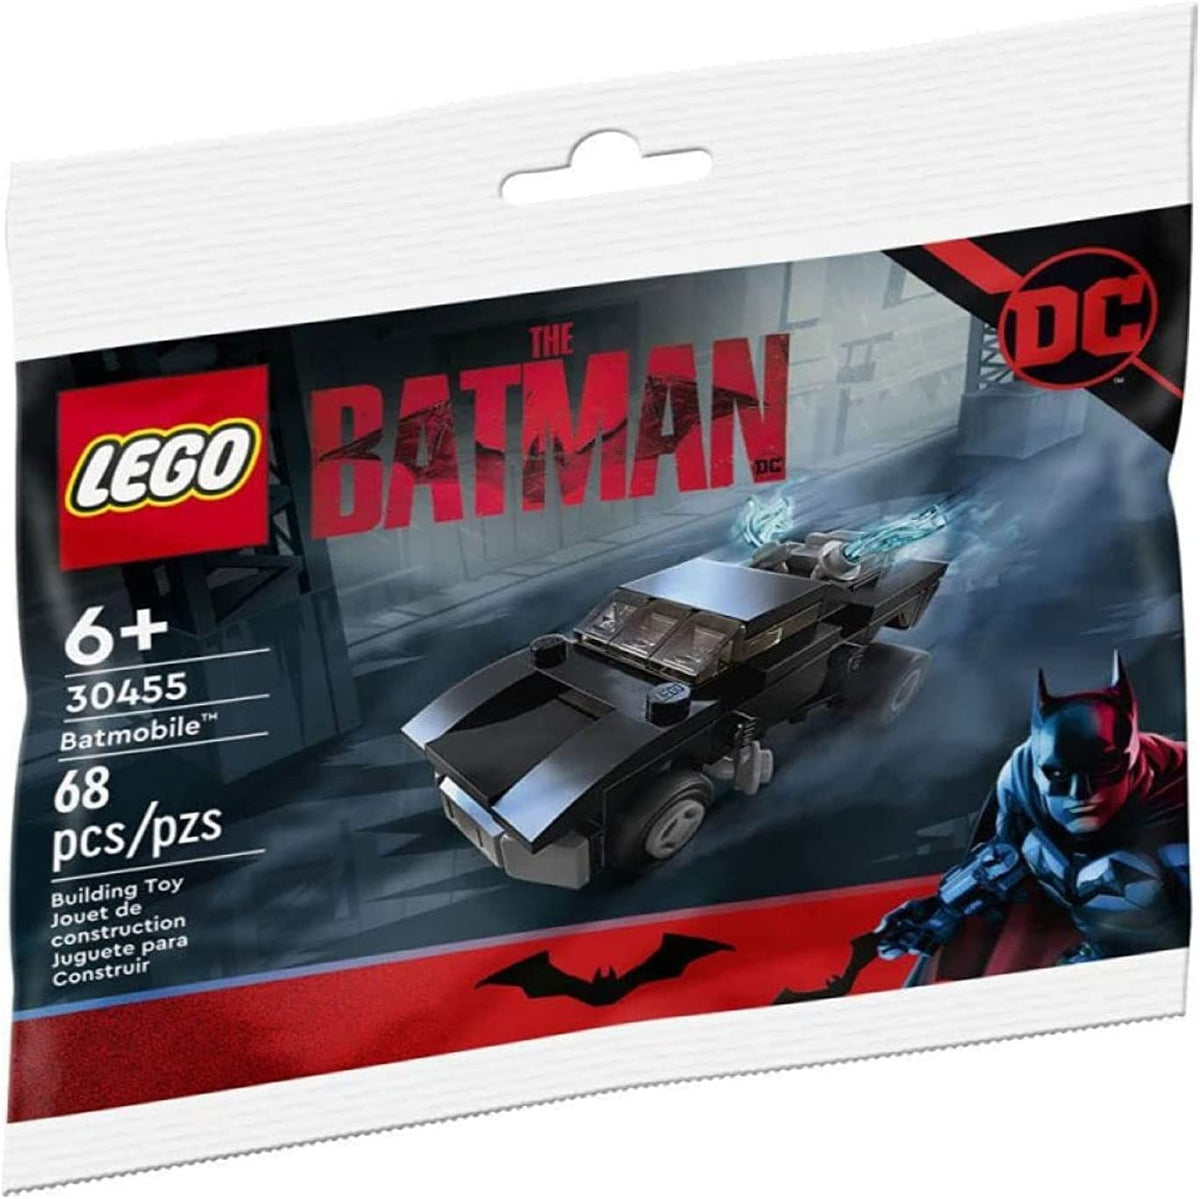 LEGO DC Super Heroes 30455 Batmobil